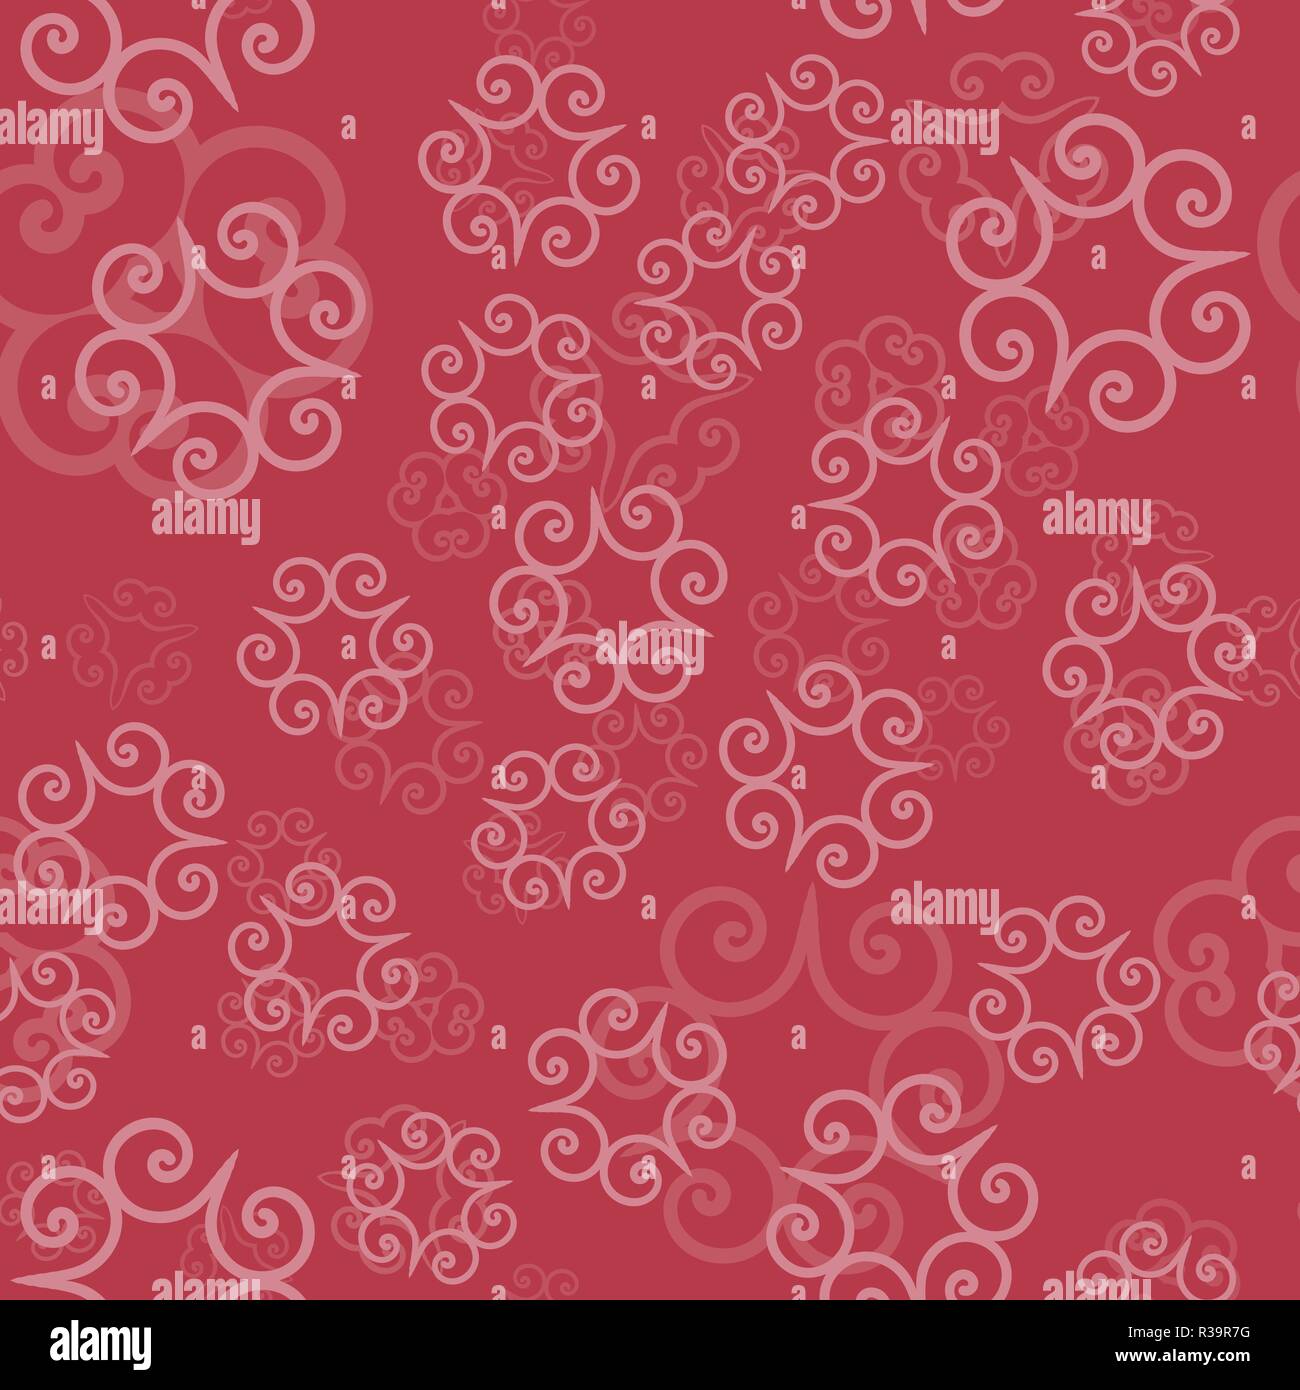 Rosa Farbe Ornament von Mandalas auf einem roten Hintergrund. Für orientalische Geschenkpapier, Schals, Textilien, Gewebe, ethnischen Textil Stock Vektor